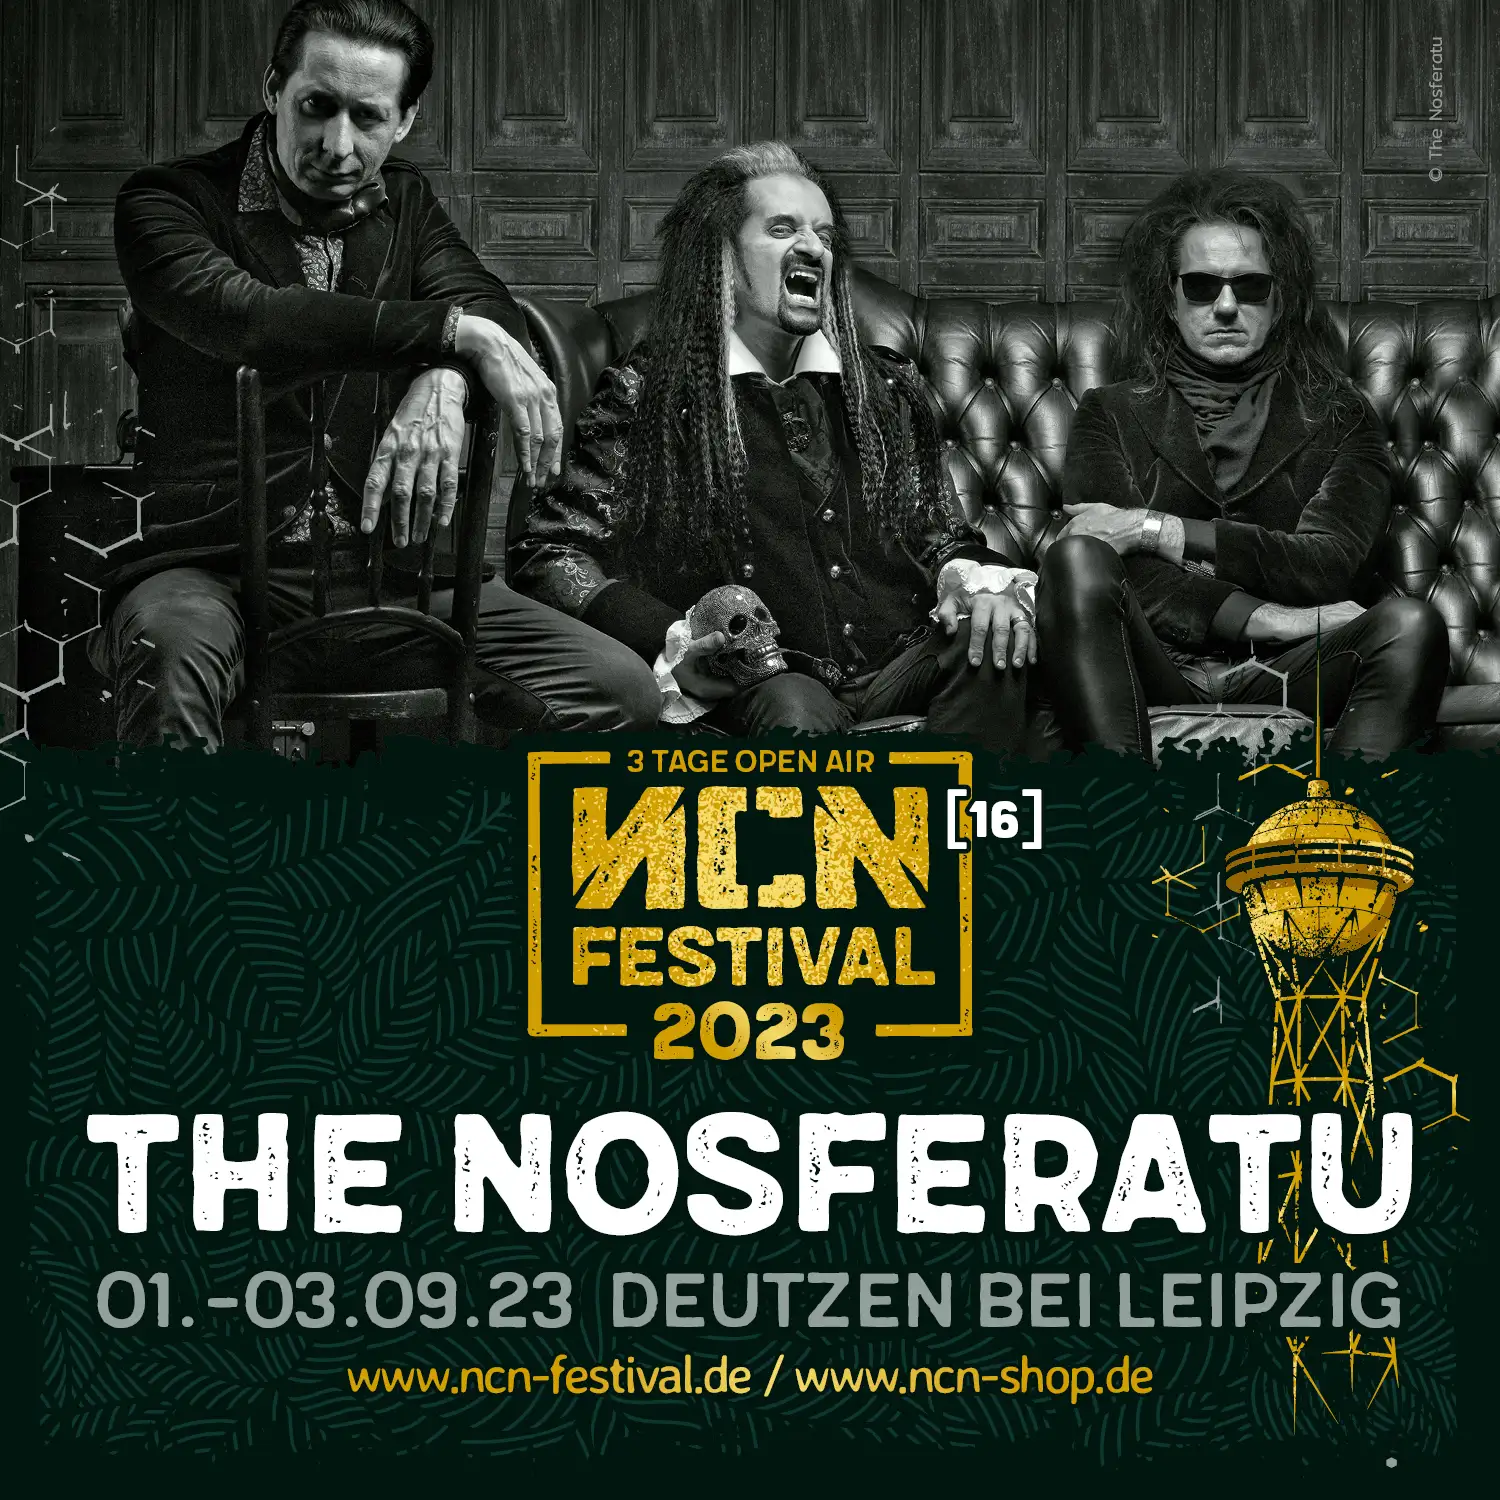 The Nosferatu